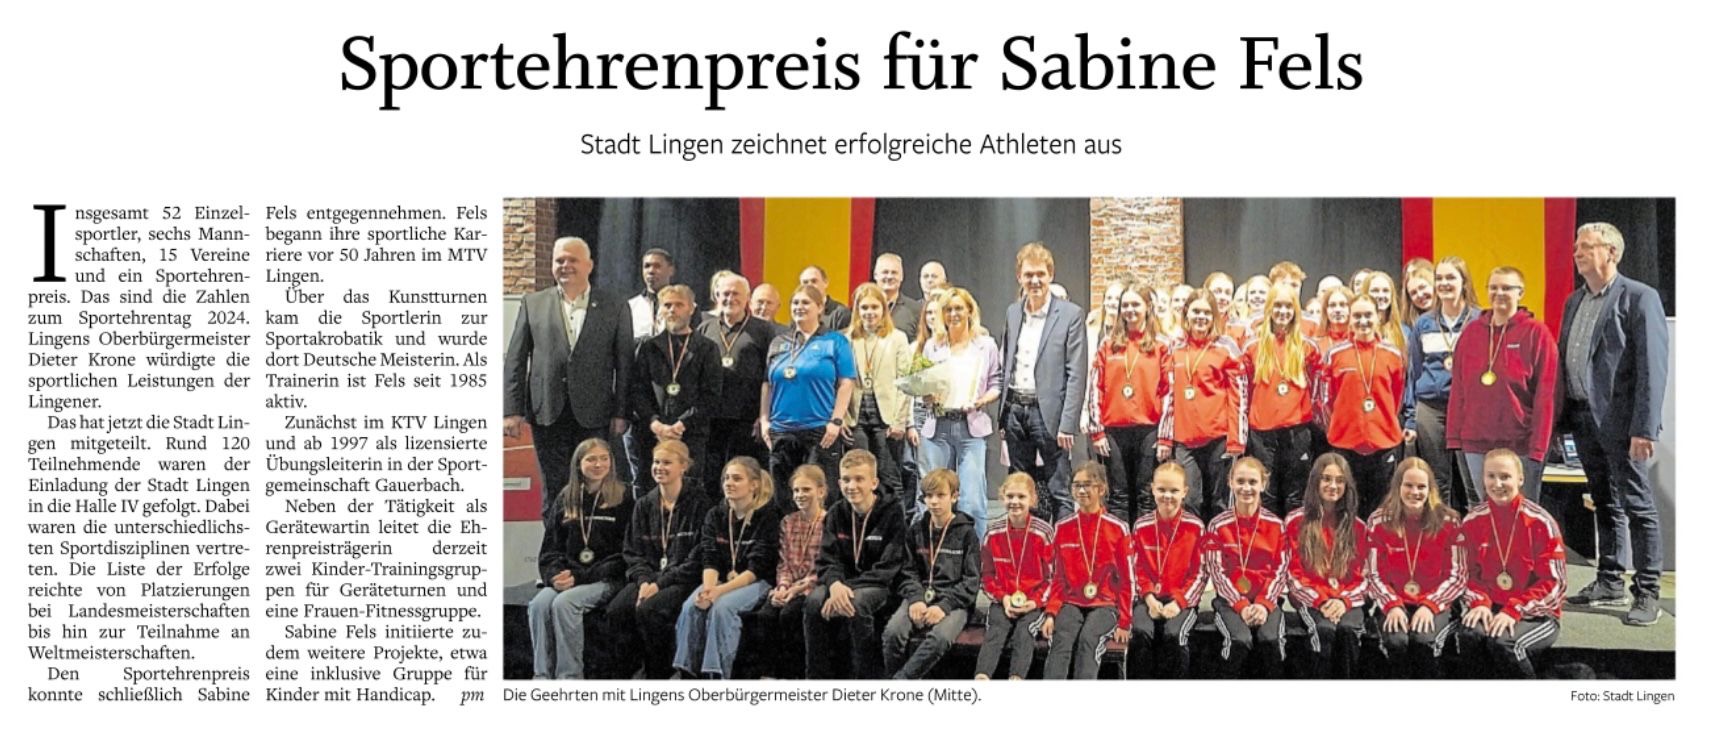 Sportehrenpreis für Sabine Fels